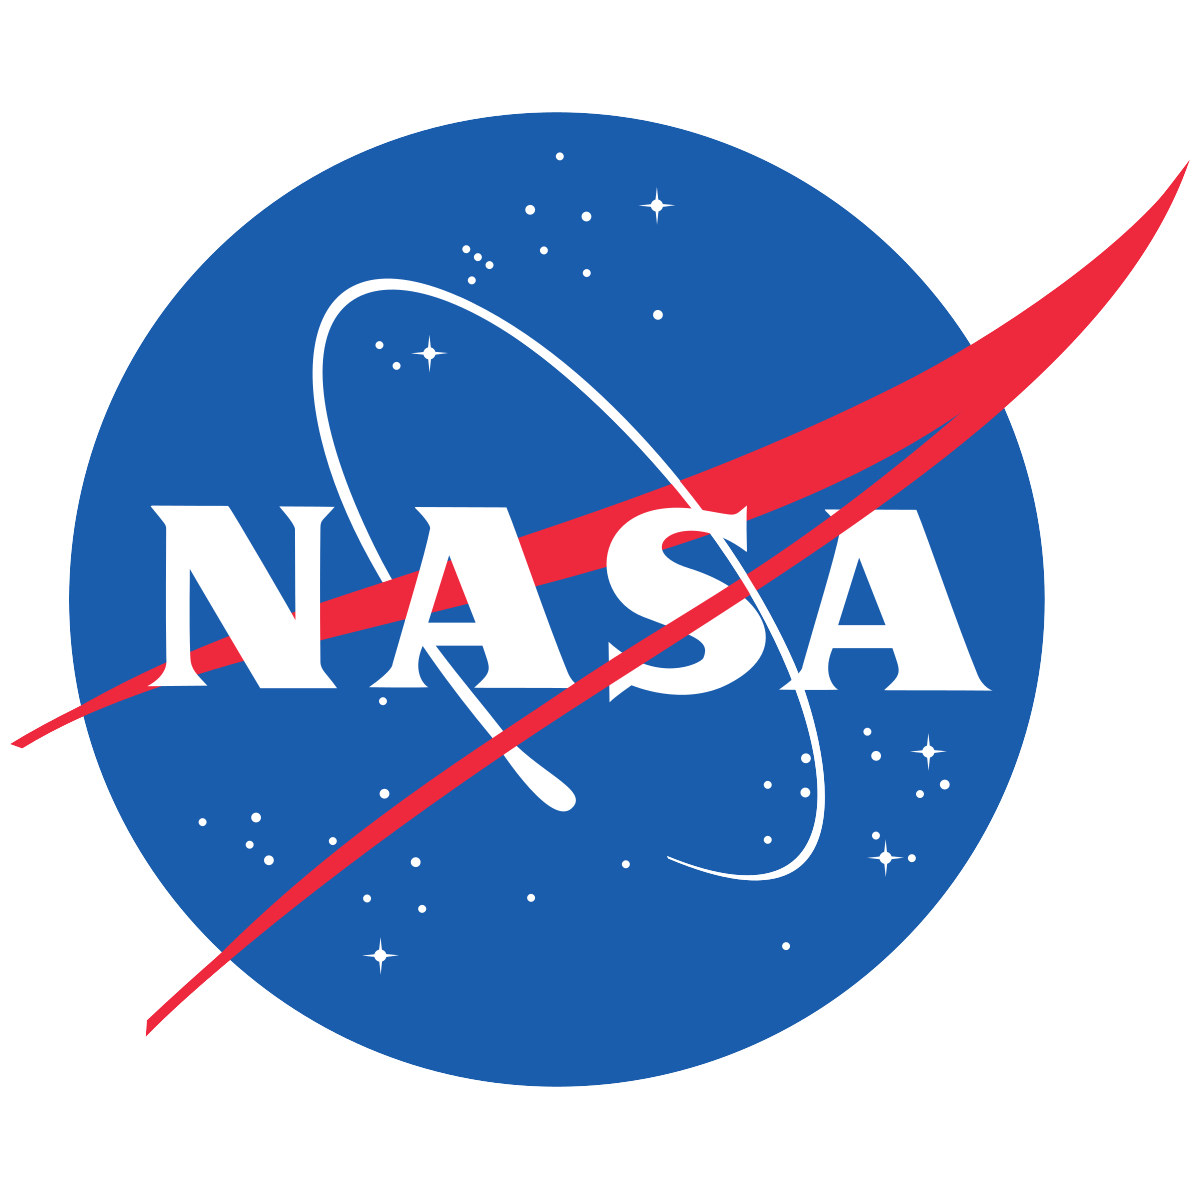 091: Sasha Samochina on how NASA fuses science and art (Live from SXSW)